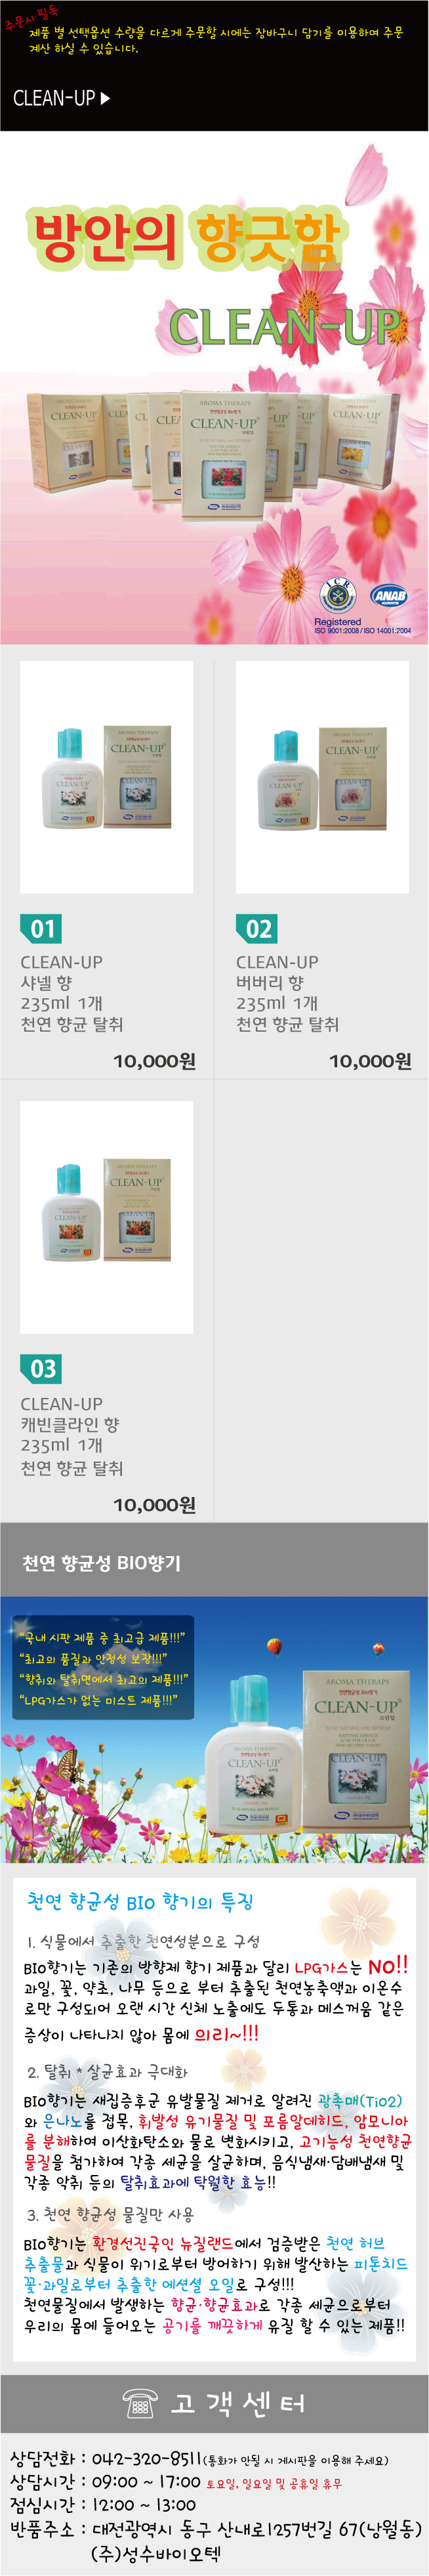 clean-up_perfume.jpg